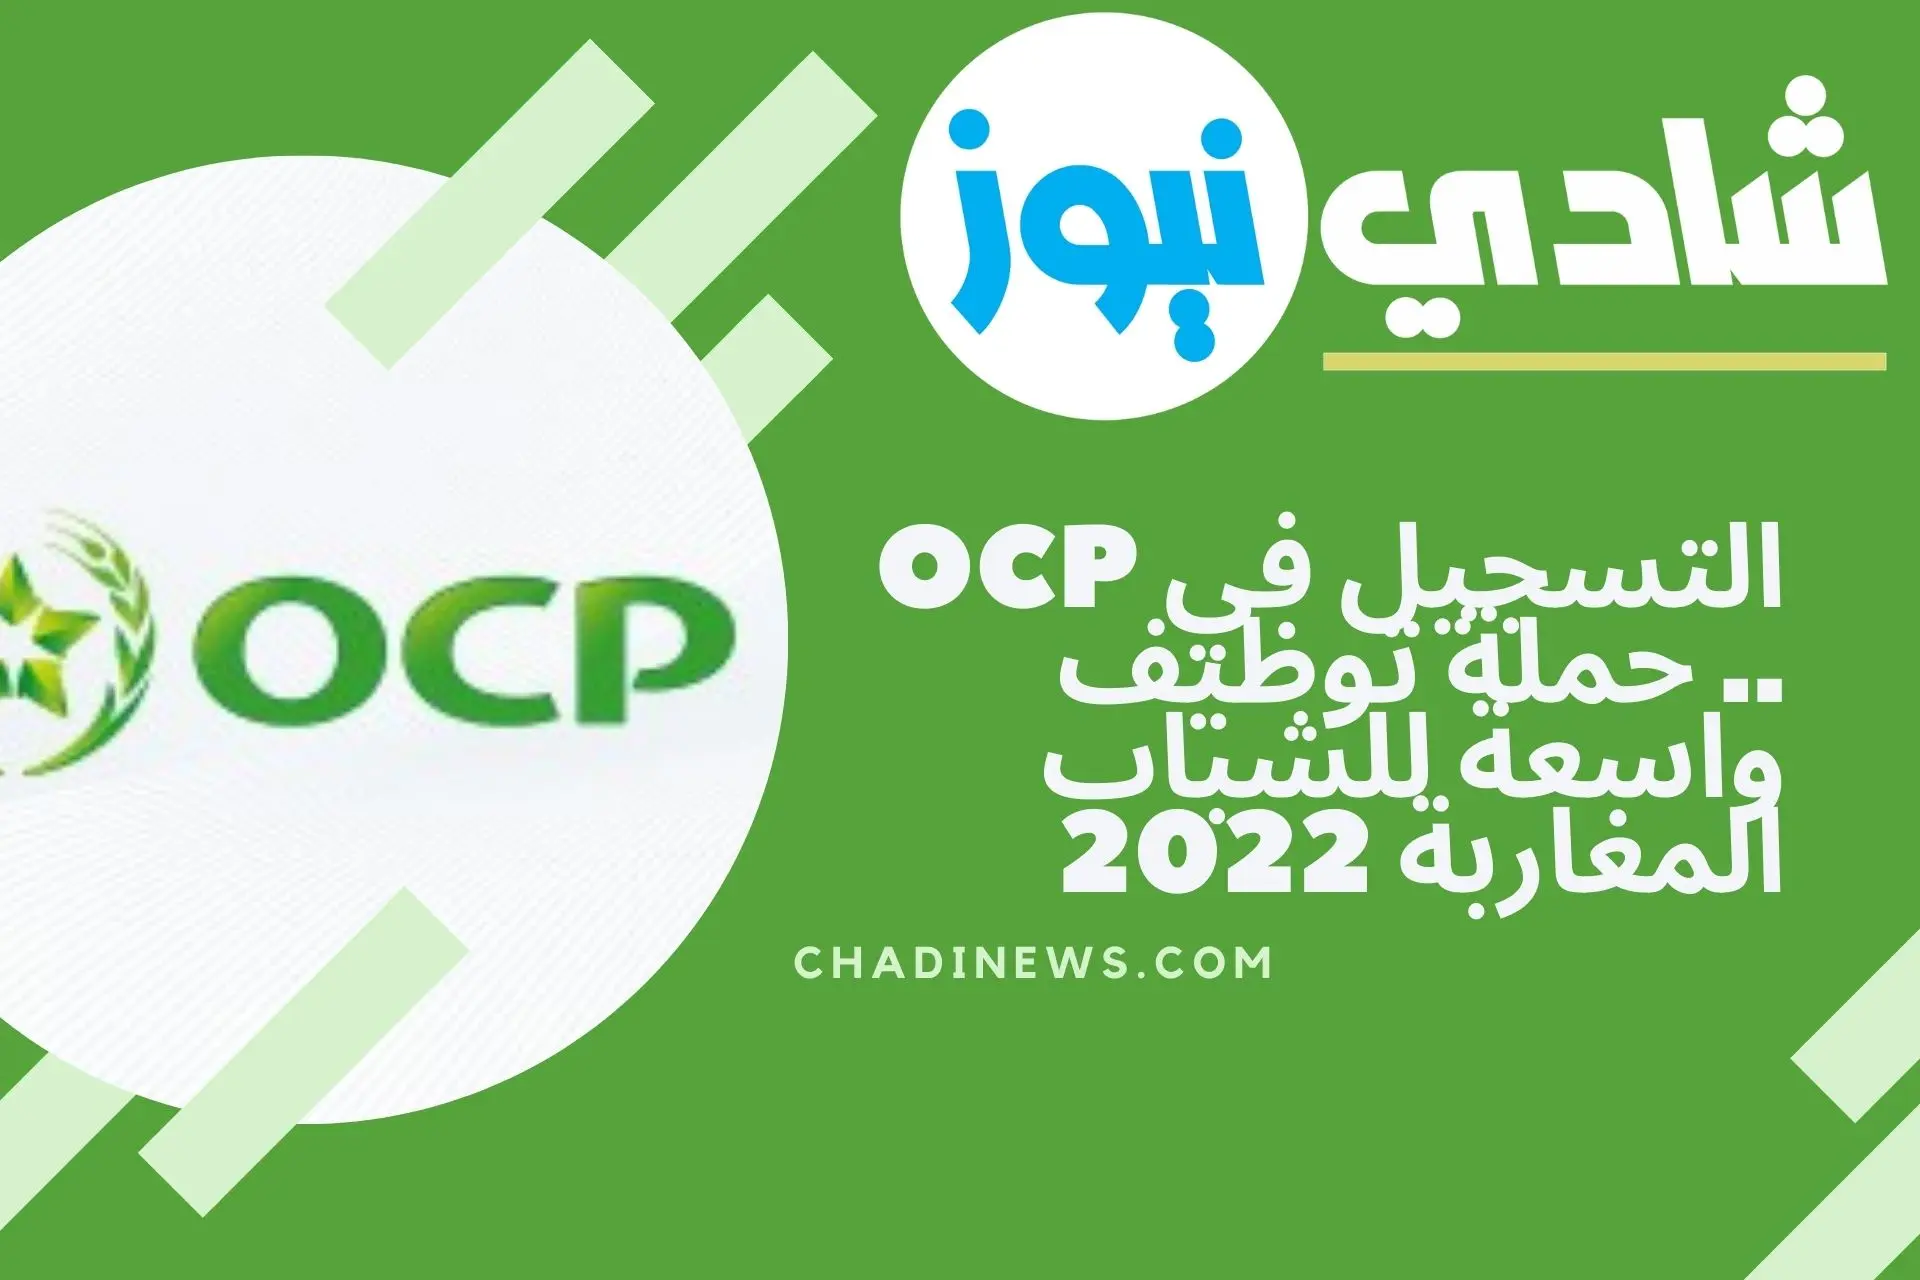 التسجيل في OCP .. حملة توظيف واسعة للشباب المغاربة 2022